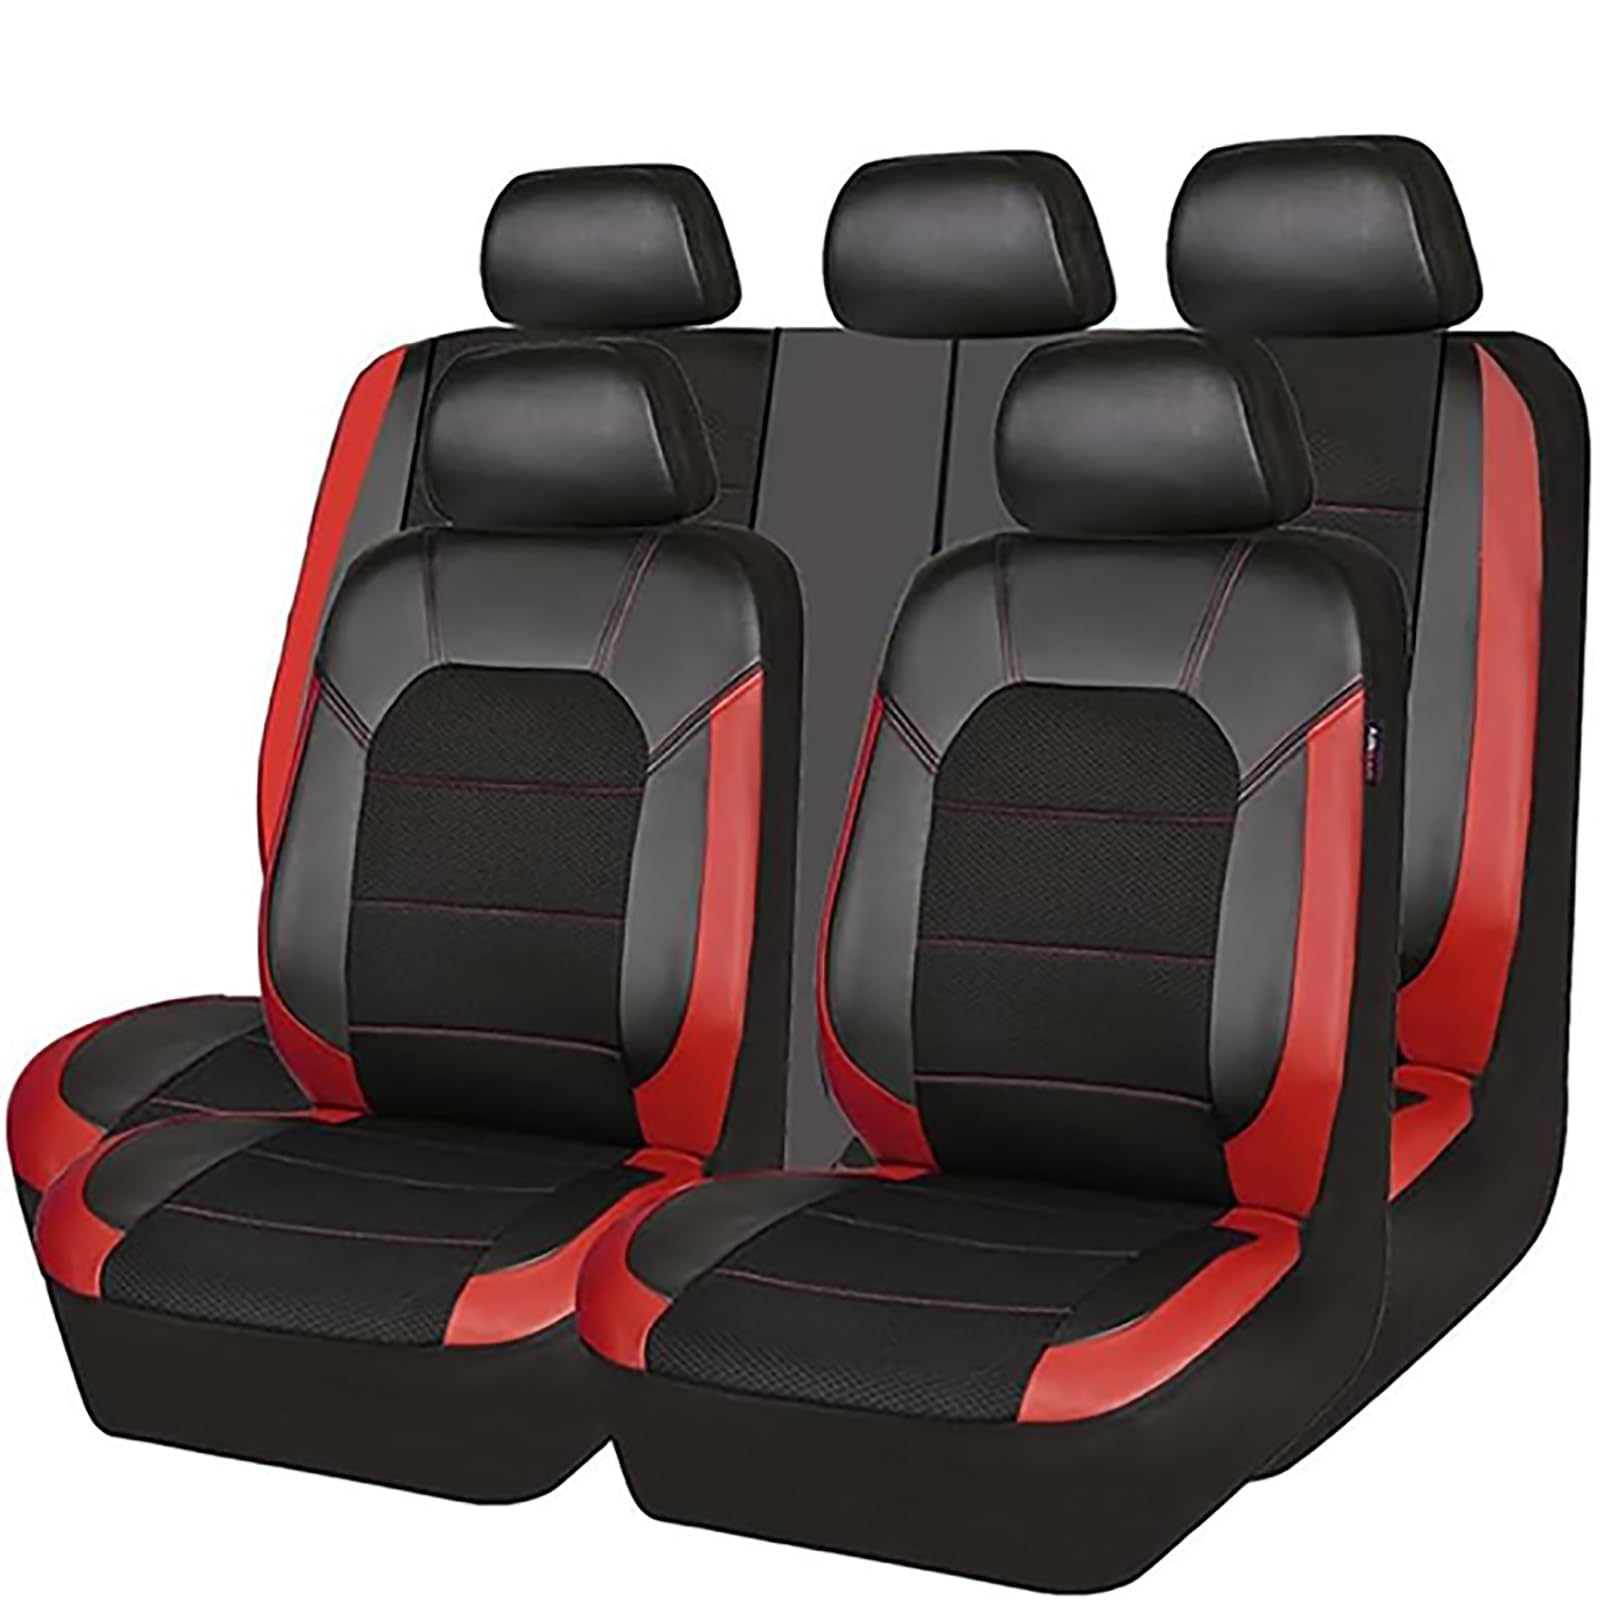 EYHQKRTR Auto Leder Sitzkissen Für VW T-ROC SUV/R-Line (A11) 2017-2022, 5 Sitzer Full Set SitzbezüGe Schonbezug Vorne Rückbank Sitzschutz Compatible Airbag Innenraum Zubehör,D/Red von EYHQKRTR